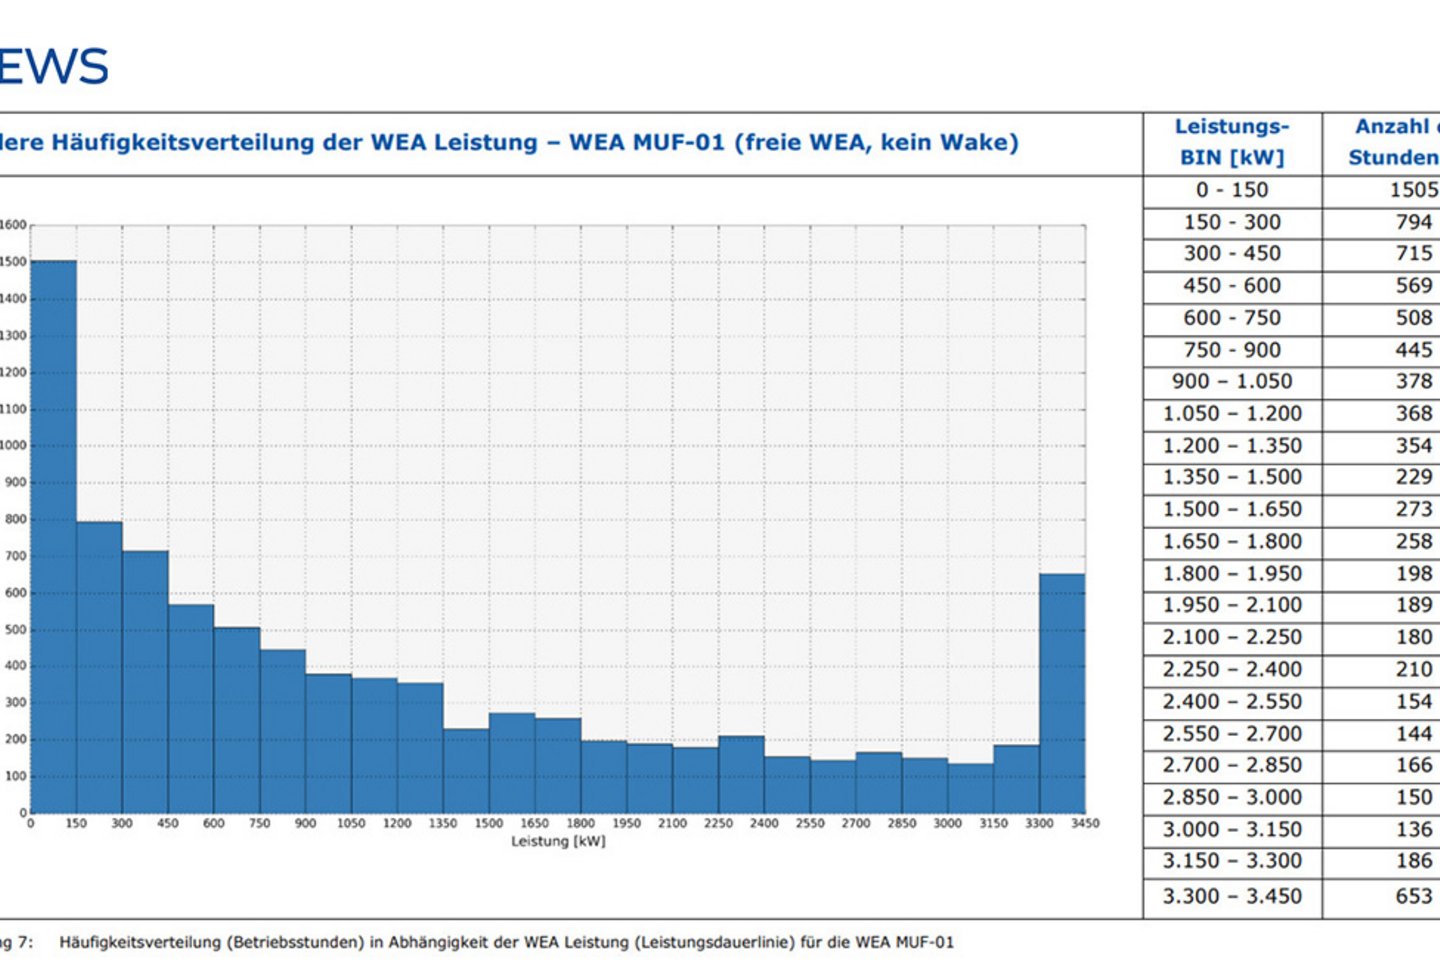 Ertragsprognose, Häufigkeitsverteilung der WEA Leistung Muf-01, Windpark Munderfing